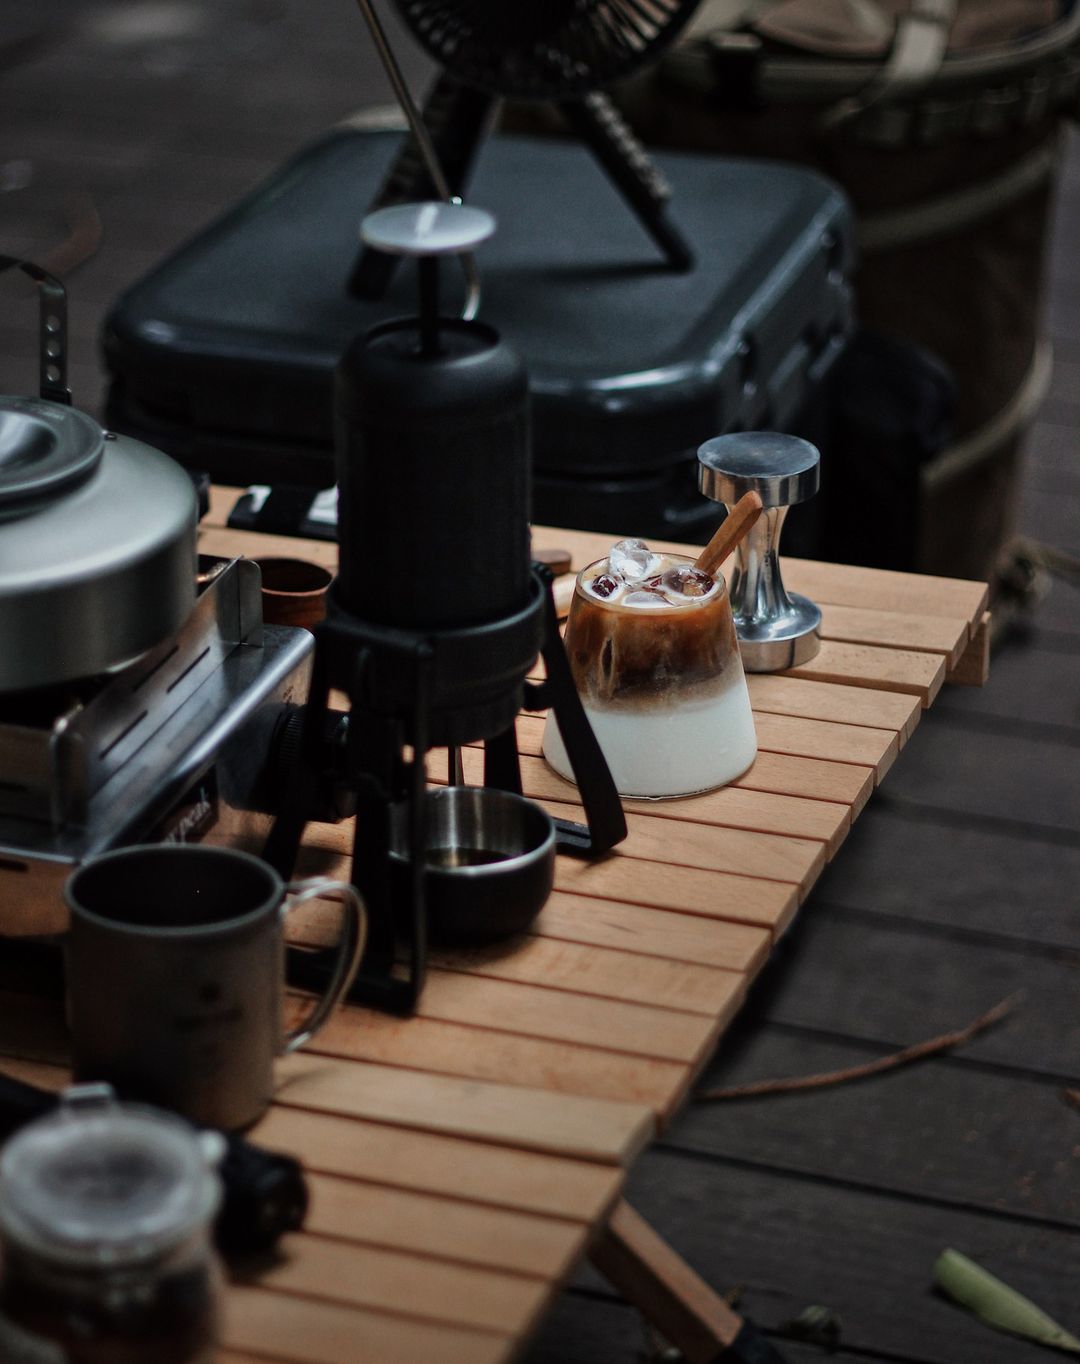 STARESSO Classic Portable Espresso Maker,Unique 2IN1 Travel Coffee Maker,Compatible  Nespresso Capsules and Ground Coffee,Manual Espresso Machine,Hand Coffee  Maker for Kitchen travel,camping,hiking 